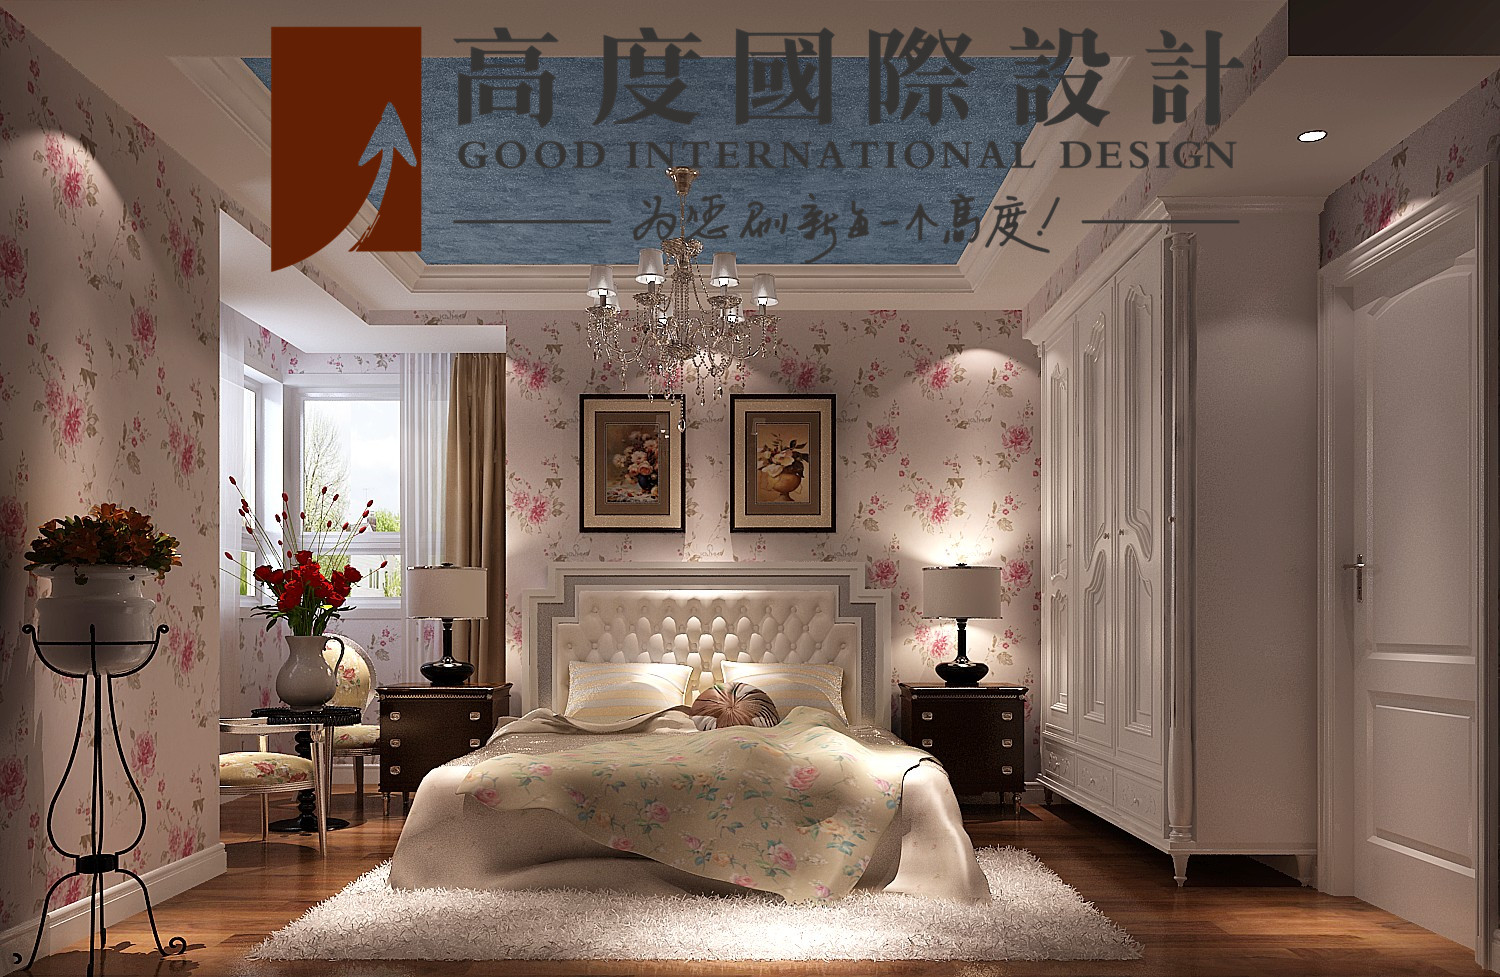 二居 美式 田园 卧室图片来自高度国际设计严振宇在K2百合湾两居室美式田园风格的分享